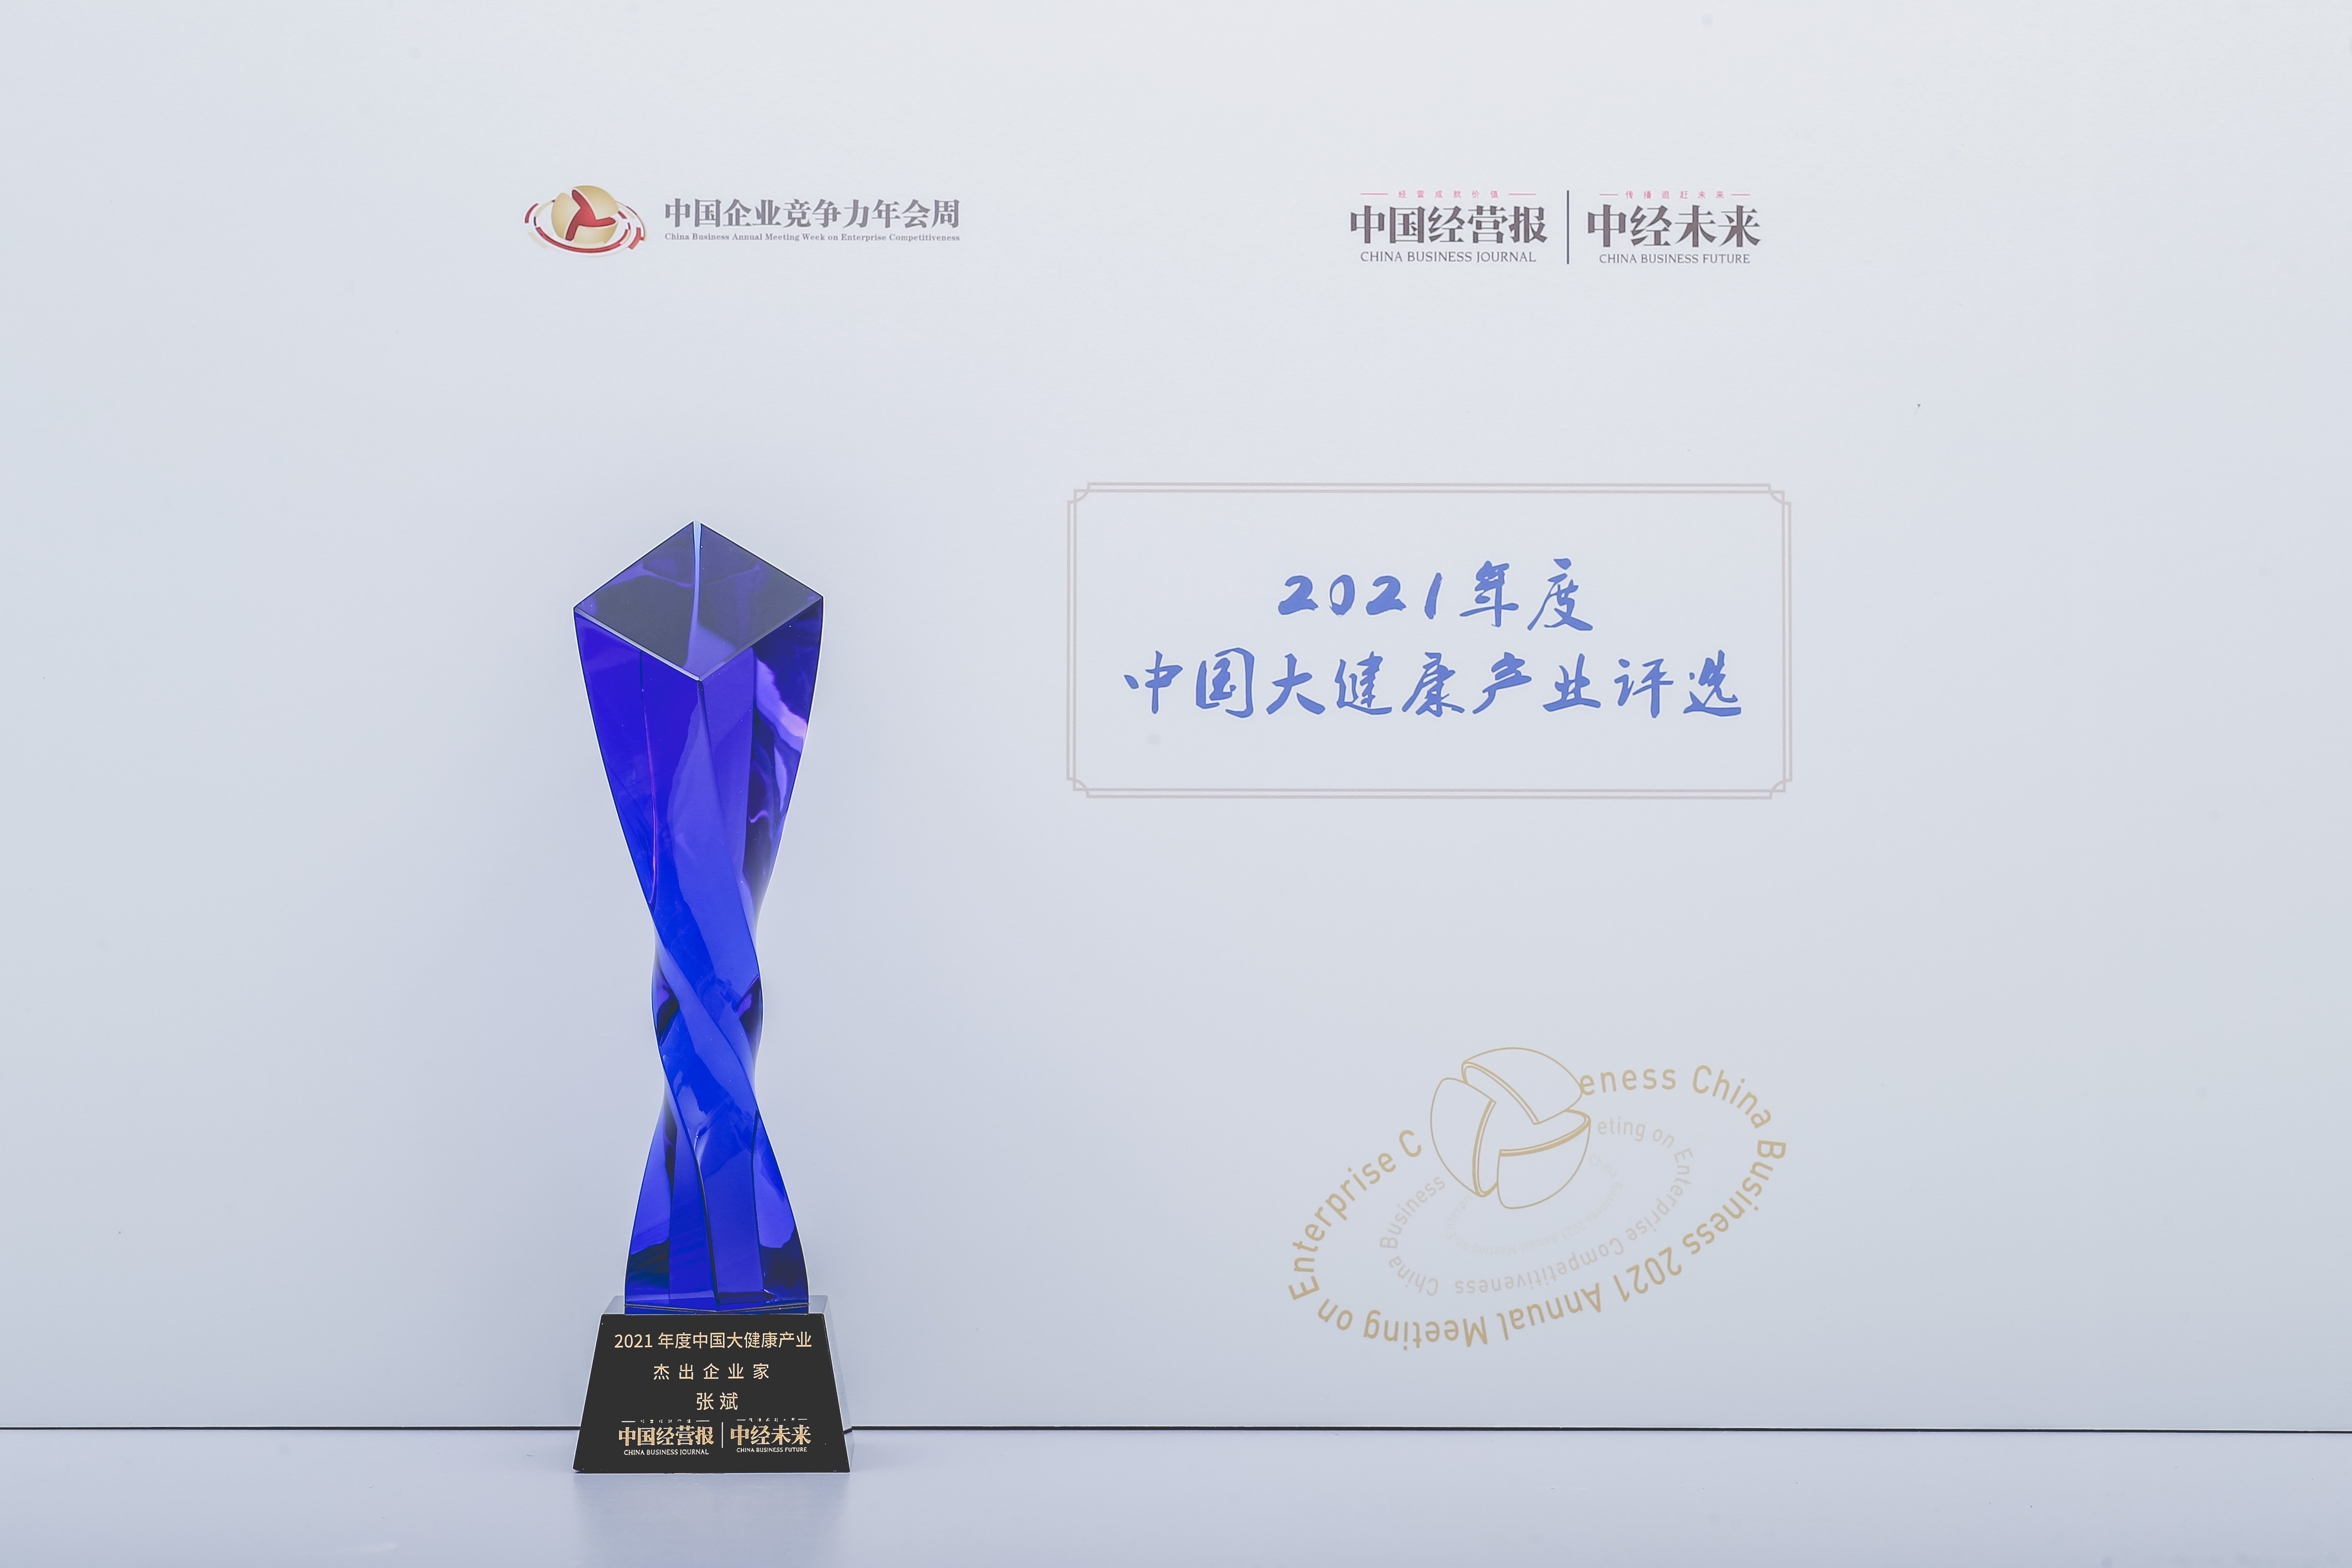 广誉远张斌荣获“2021年度大健康产业杰出企业家奖”